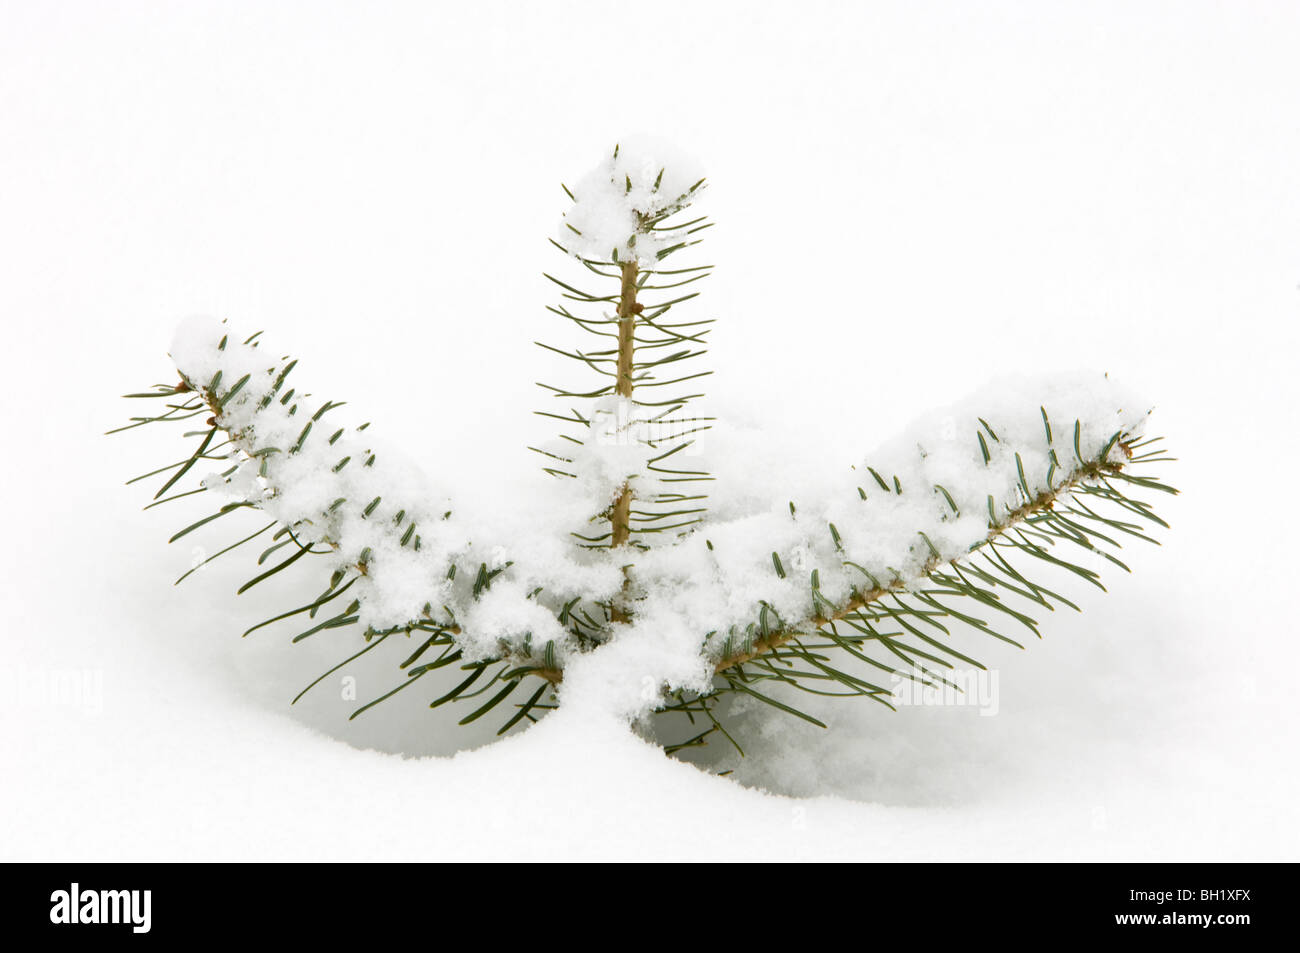 L'abete bianco (Picea glauca) piantina rami con neve fresca, maggiore Sudbury, Ontario, Canada Foto Stock